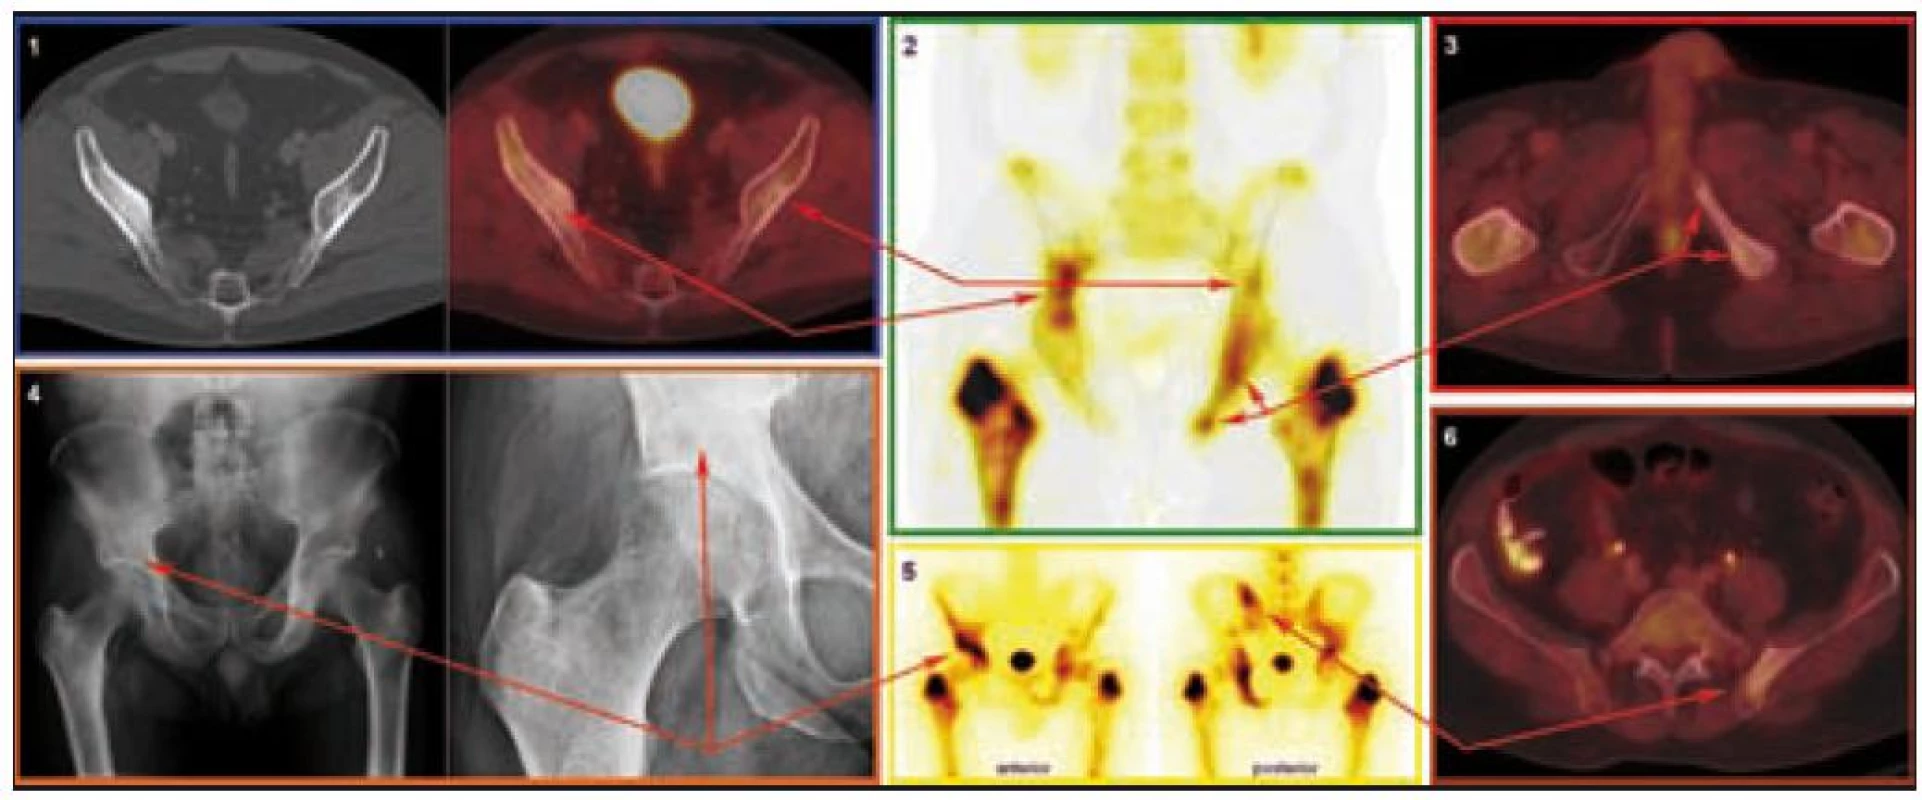 Charakteristická patologie v oblasti pánevního pletence z pohledu různých zobrazovacích modalit.

CT a PET/CT (1): Nepravidelná struktura s nápadnými sklerotickými okrsky, místy v terénu prořídlé struktury v oblasti obou lopat kostí kyčelních. PET komponenta zachycuje difuzně zvýšenou aktivitu FDG v místech strukturálních změn popisovaných na CT.

SPECT (2) a scintigrafie skeletu (5): Zvýšená aktivita radiofarmaka v oblasti kosti sedací a stydké vlevo, v oblasti kosti kyčelní vpravo a dále v oblasti levého sakroiliakálního skloubení.

PET/CT (3): Nepravidelná struktura s nápadnými sklerotickými okrsky, místy v terénu prořídlé struktury v oblasti levé kosti stydké a levé kosti sedací. PET komponenta zachycuje difuzně zvýšenou aktivitu FDG v místech strukturálních změn popisovaných na CT.

RTG (4): Mírné zahuštění struktury spongiózy v okolí pravého acetabula, krčku lopaty kosti kyčelní.

PET/CT (6): Nepravidelná struktura s nápadnými sklerotickými okrsky, místy v terénu prořídlé struktury vlevo v lopatě kosti kyčelní v blízkosti sakroiliakálního skloubení. PET komponenta zachycuje difuzně zvýšenou aktivitu FDG v místech strukturálních změn popisovaných na CT.